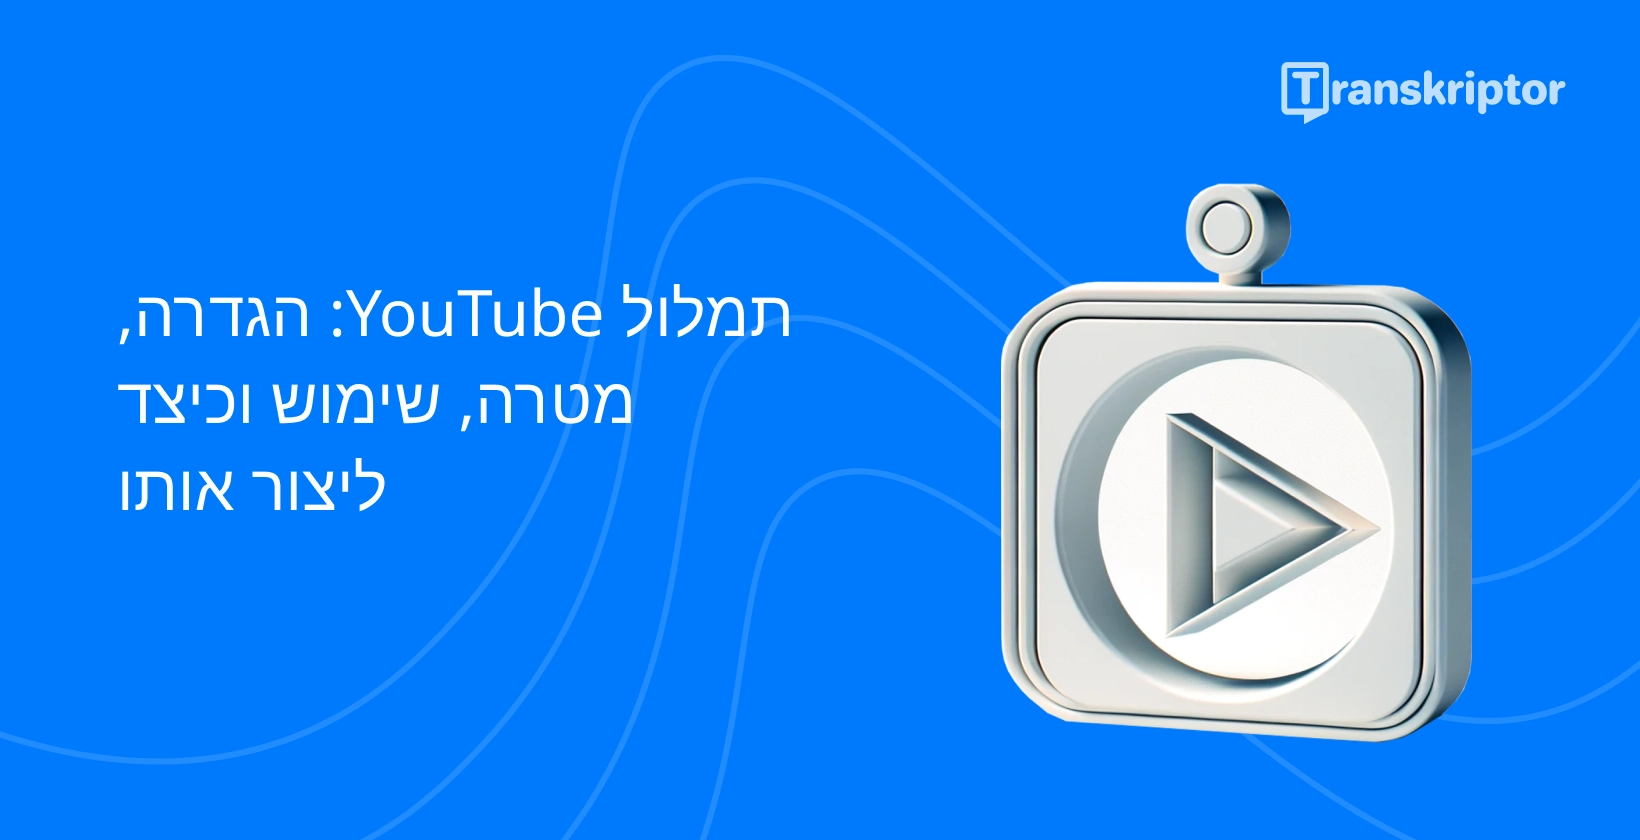 גרפיקת מדריך תמלול YouTube, הכוללת סמל לחצן הפעלה לייצוג תוכן וידאו.